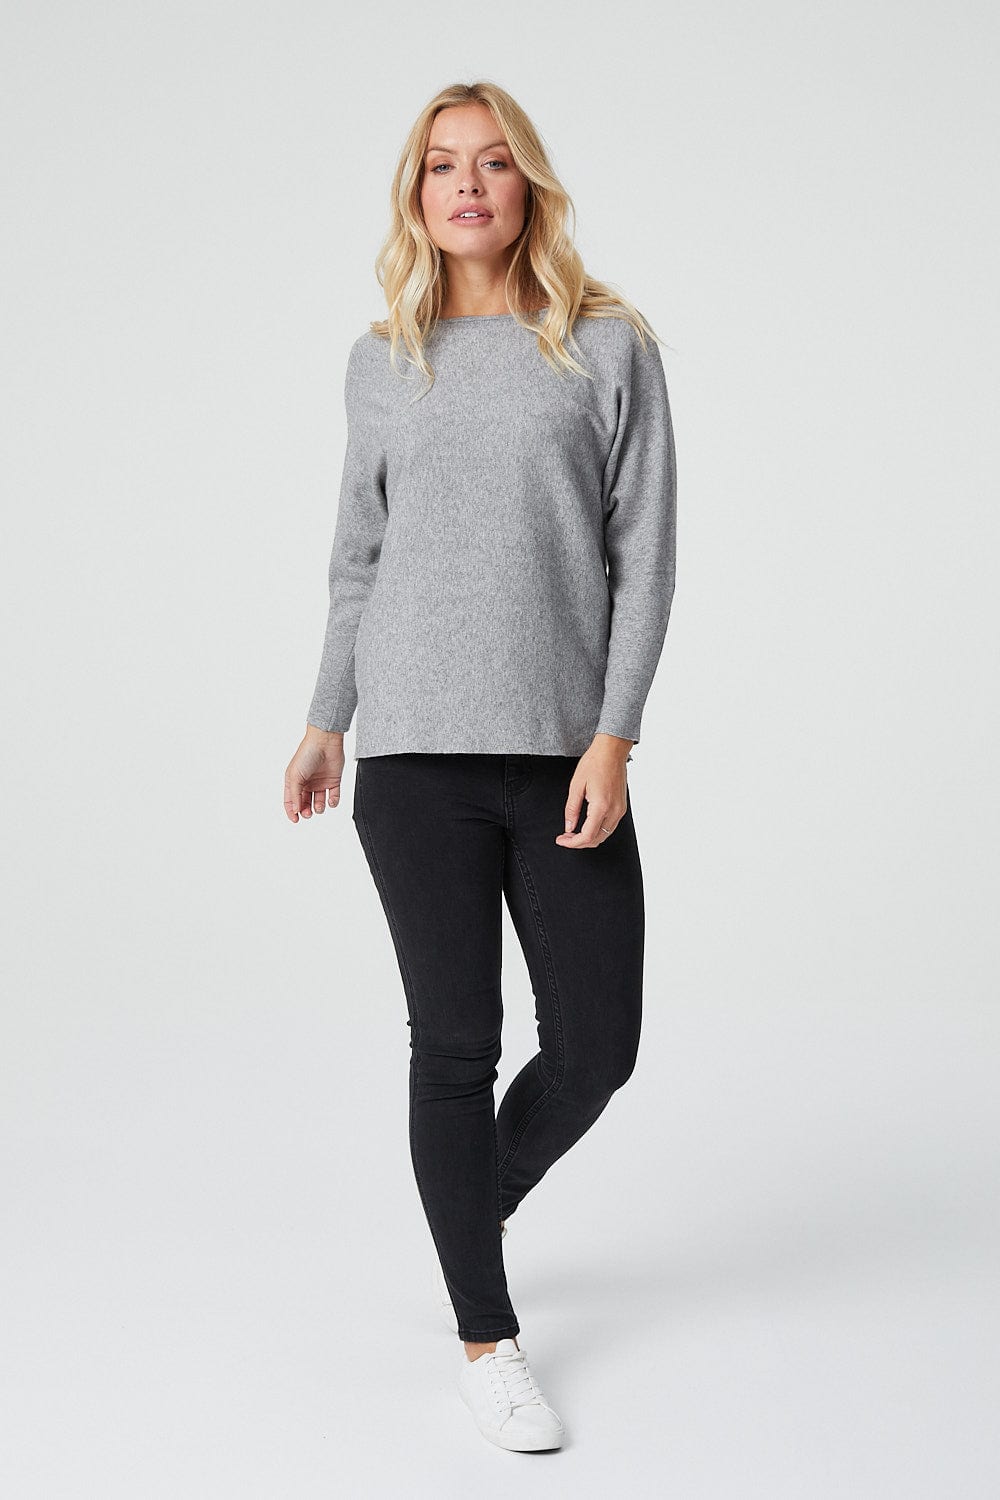 GREY | Long Sleeve Drop Shoulder Knitted Jumper